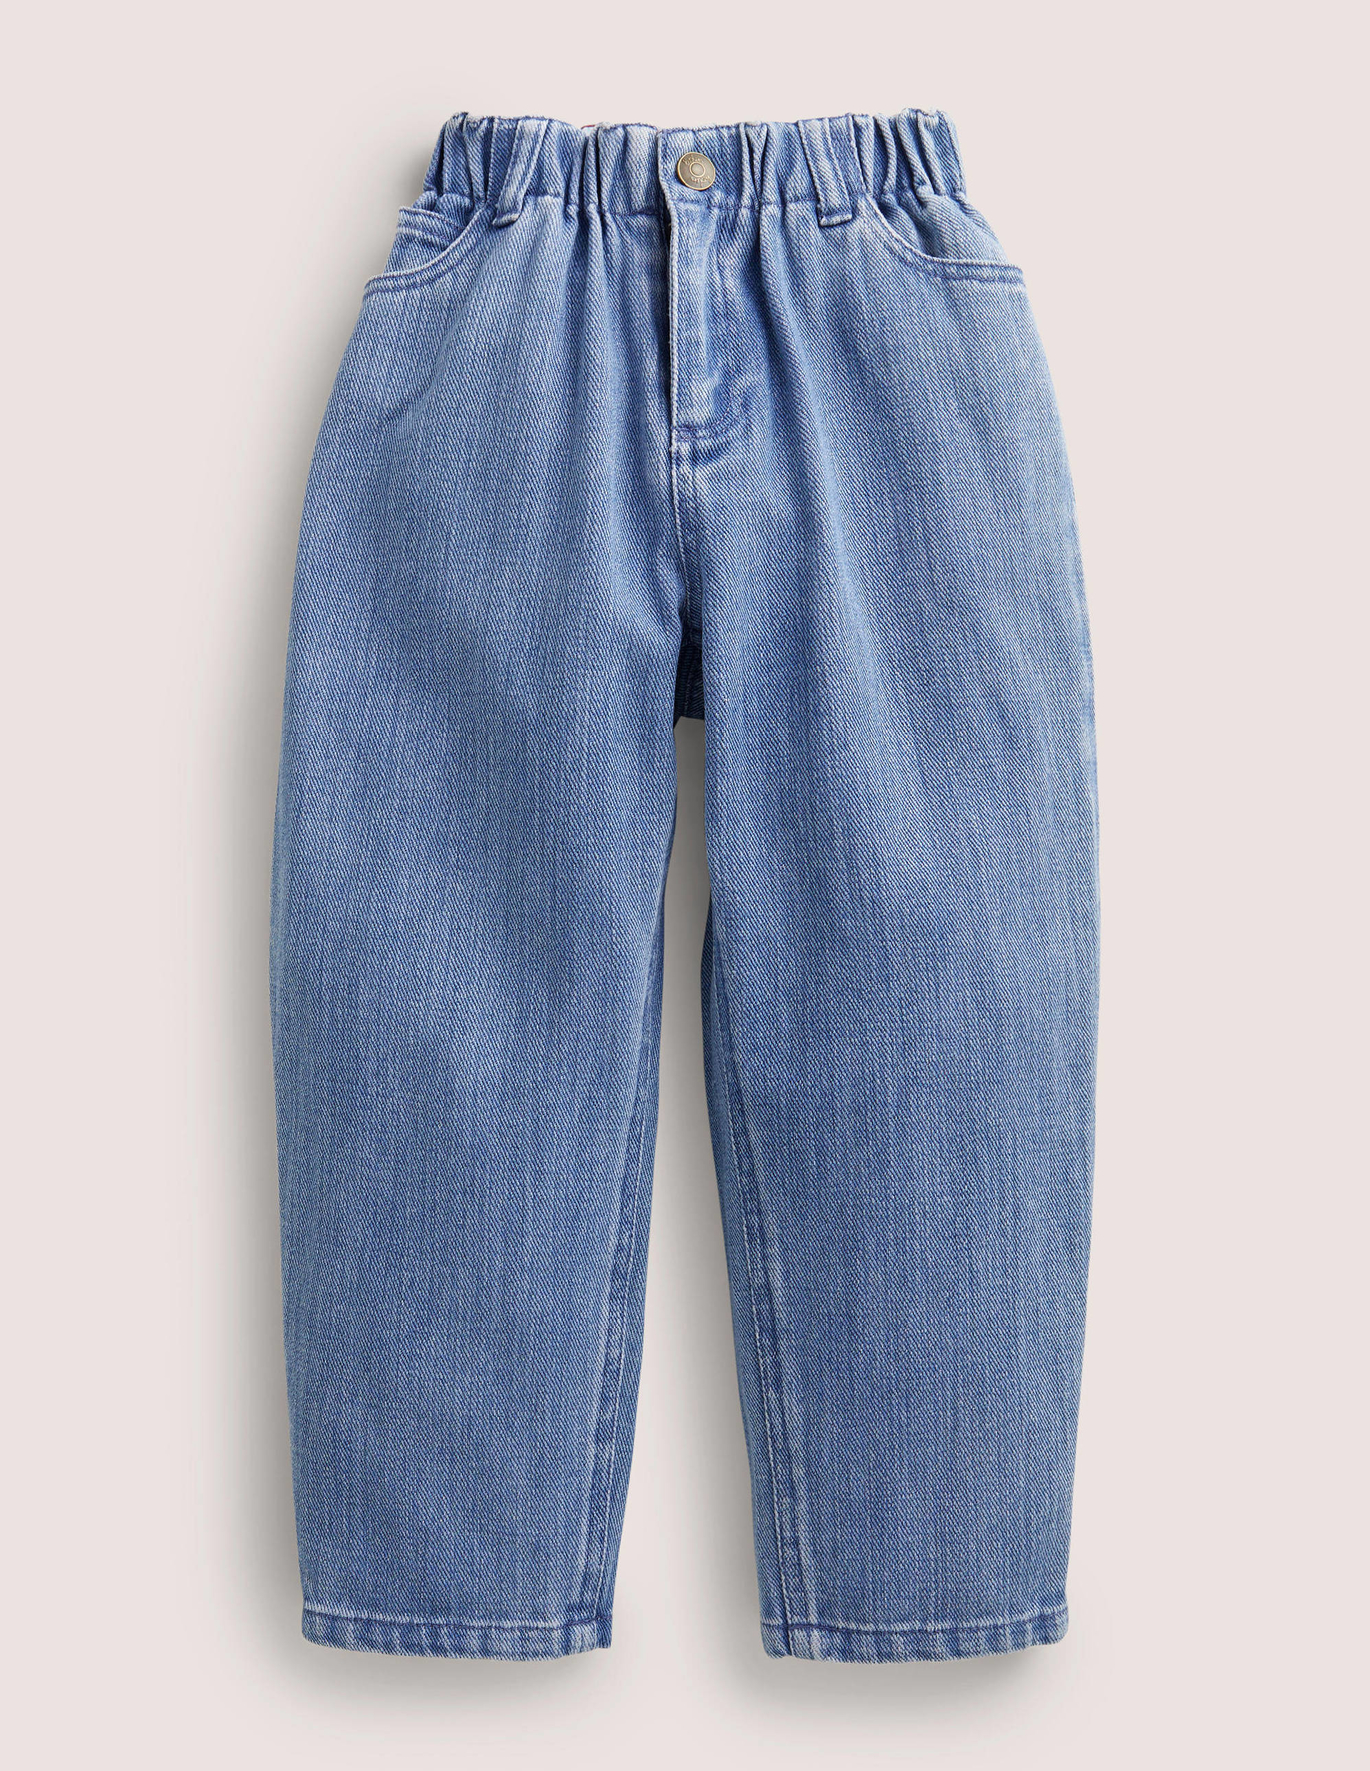 Boden Barrel Leg Jeans - Mid Vintage Denim